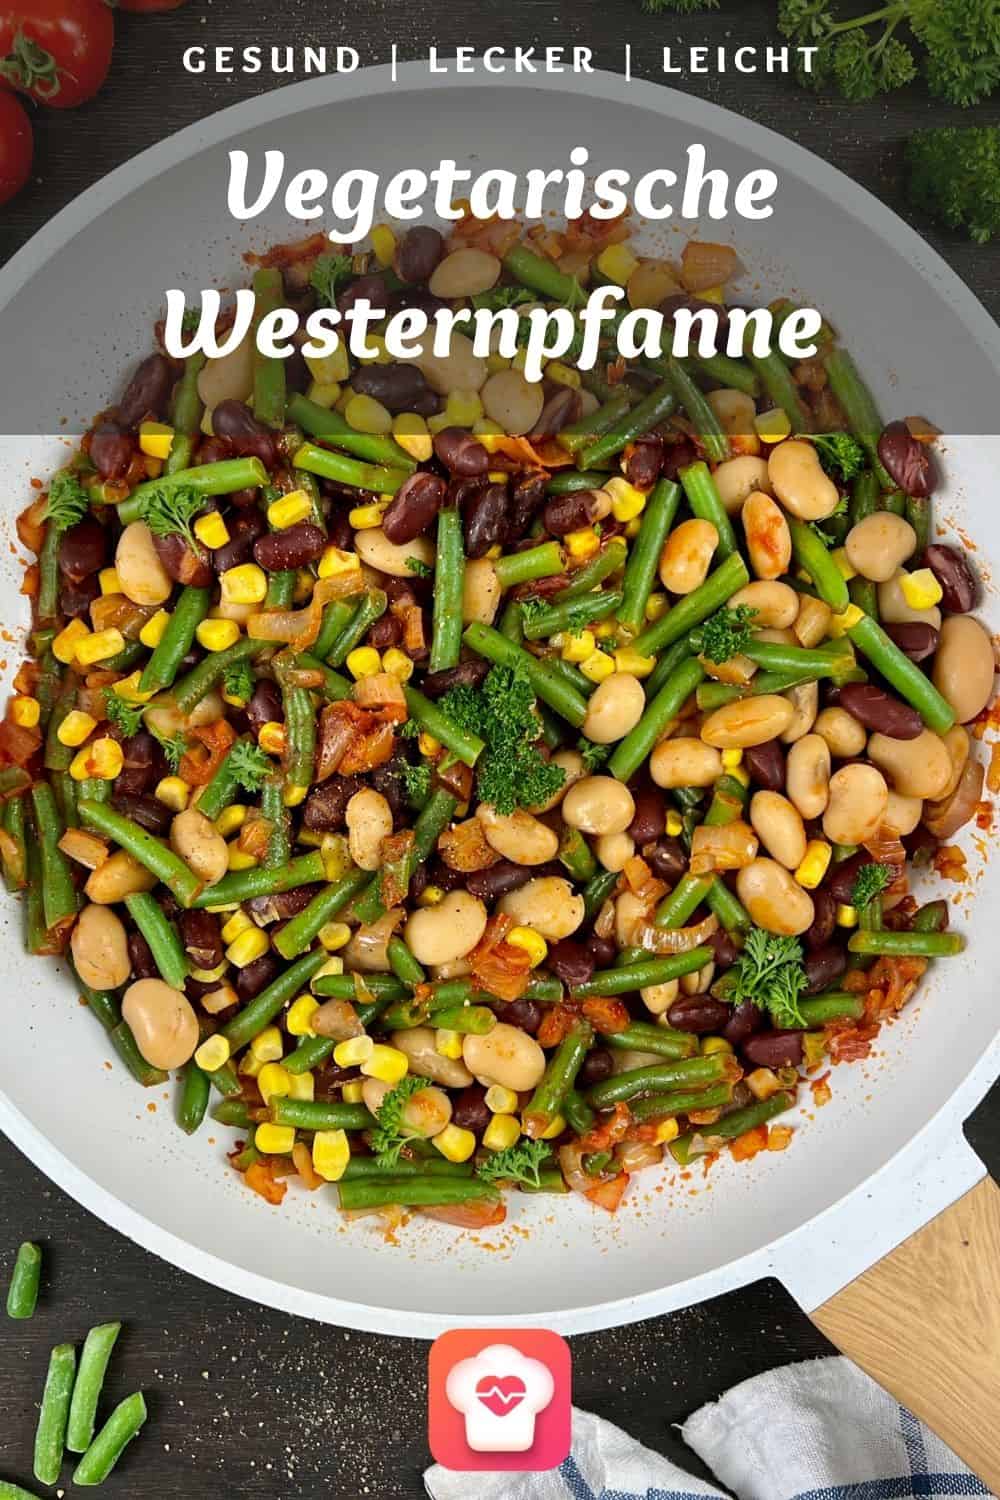 Vegetarische Westernpfanne - Gesunde Bohnenpfanne